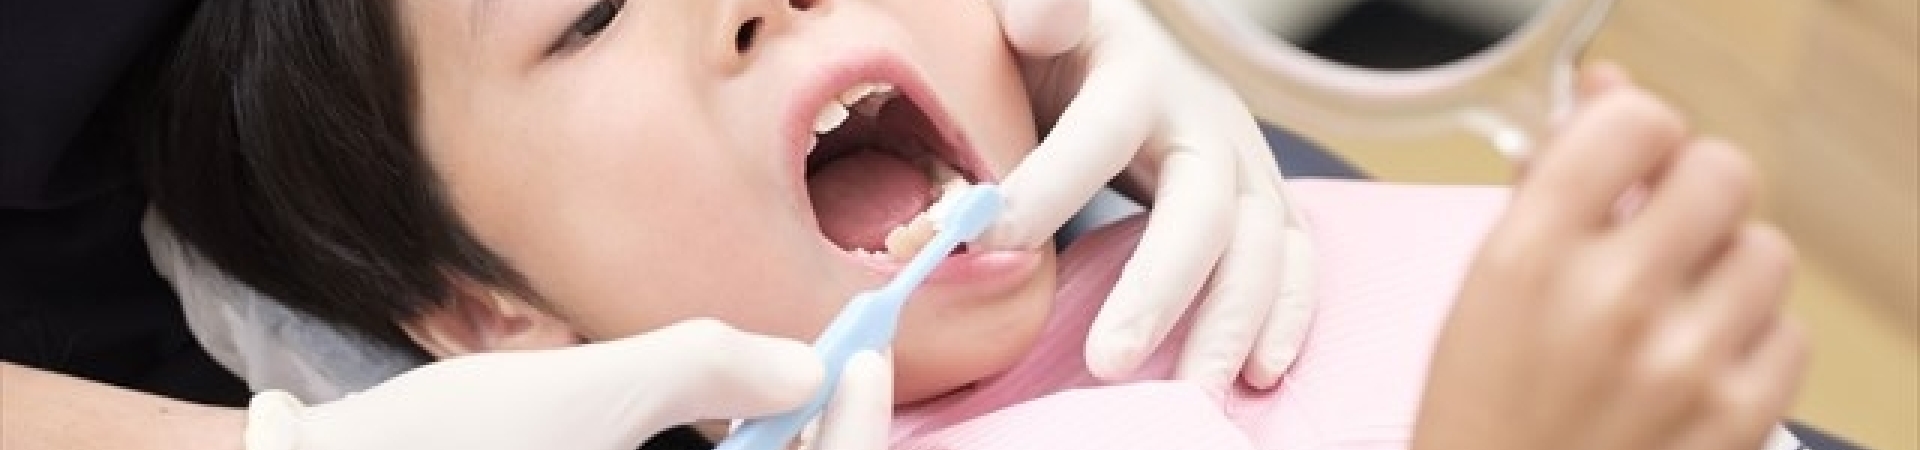 小児矯正治療-こども歯科